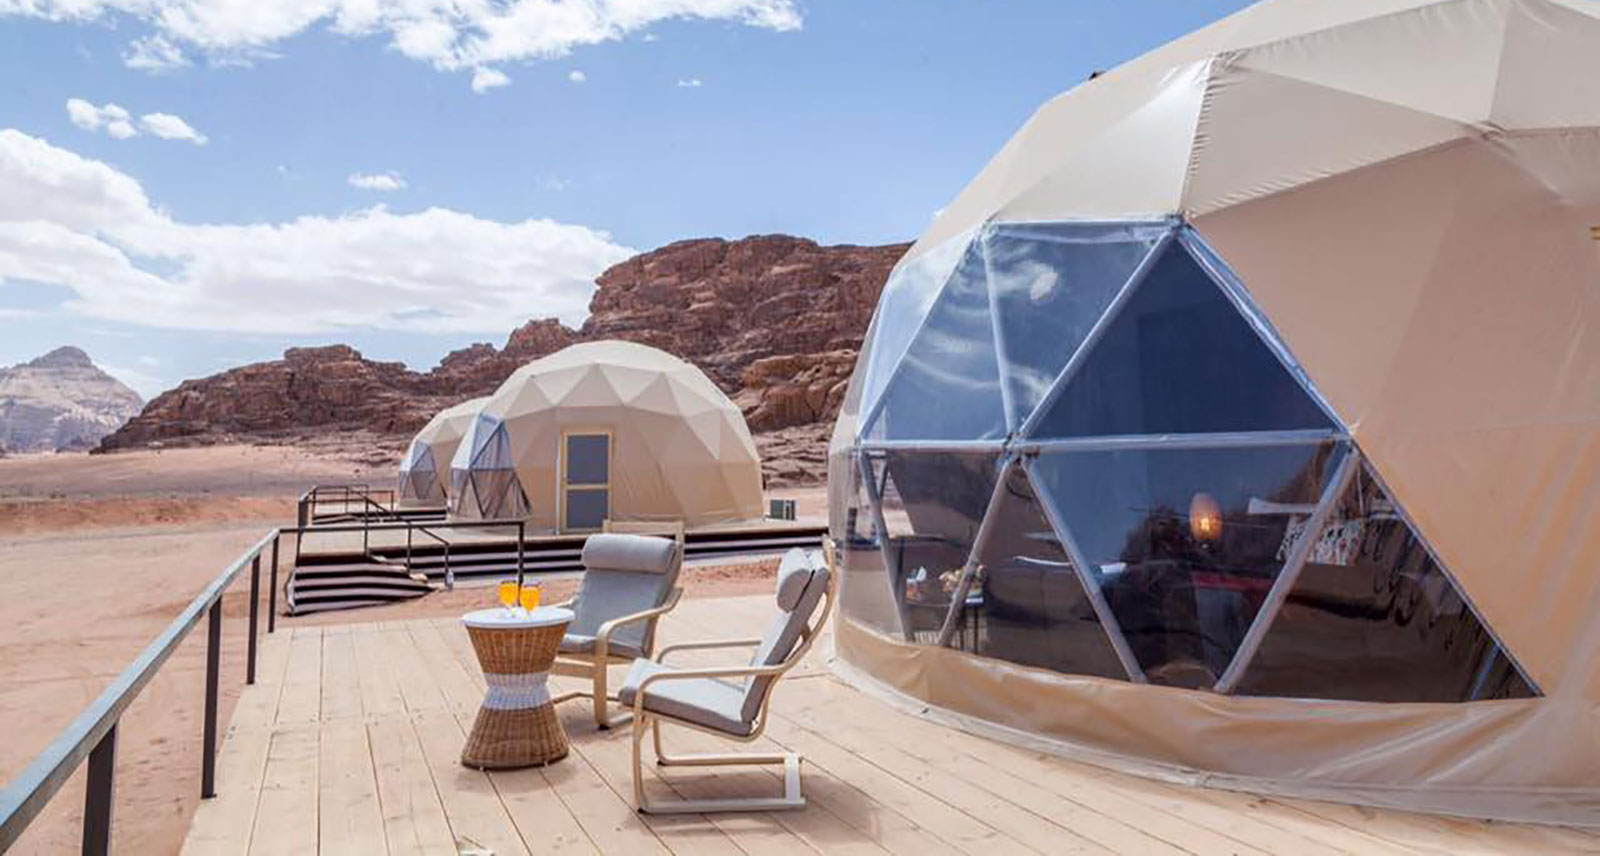 هذا الفندق المصمم على شكل قباب حديدية فى صحراء الأردن هو أقرب ما يكون لتجربة زيارة المريخ 